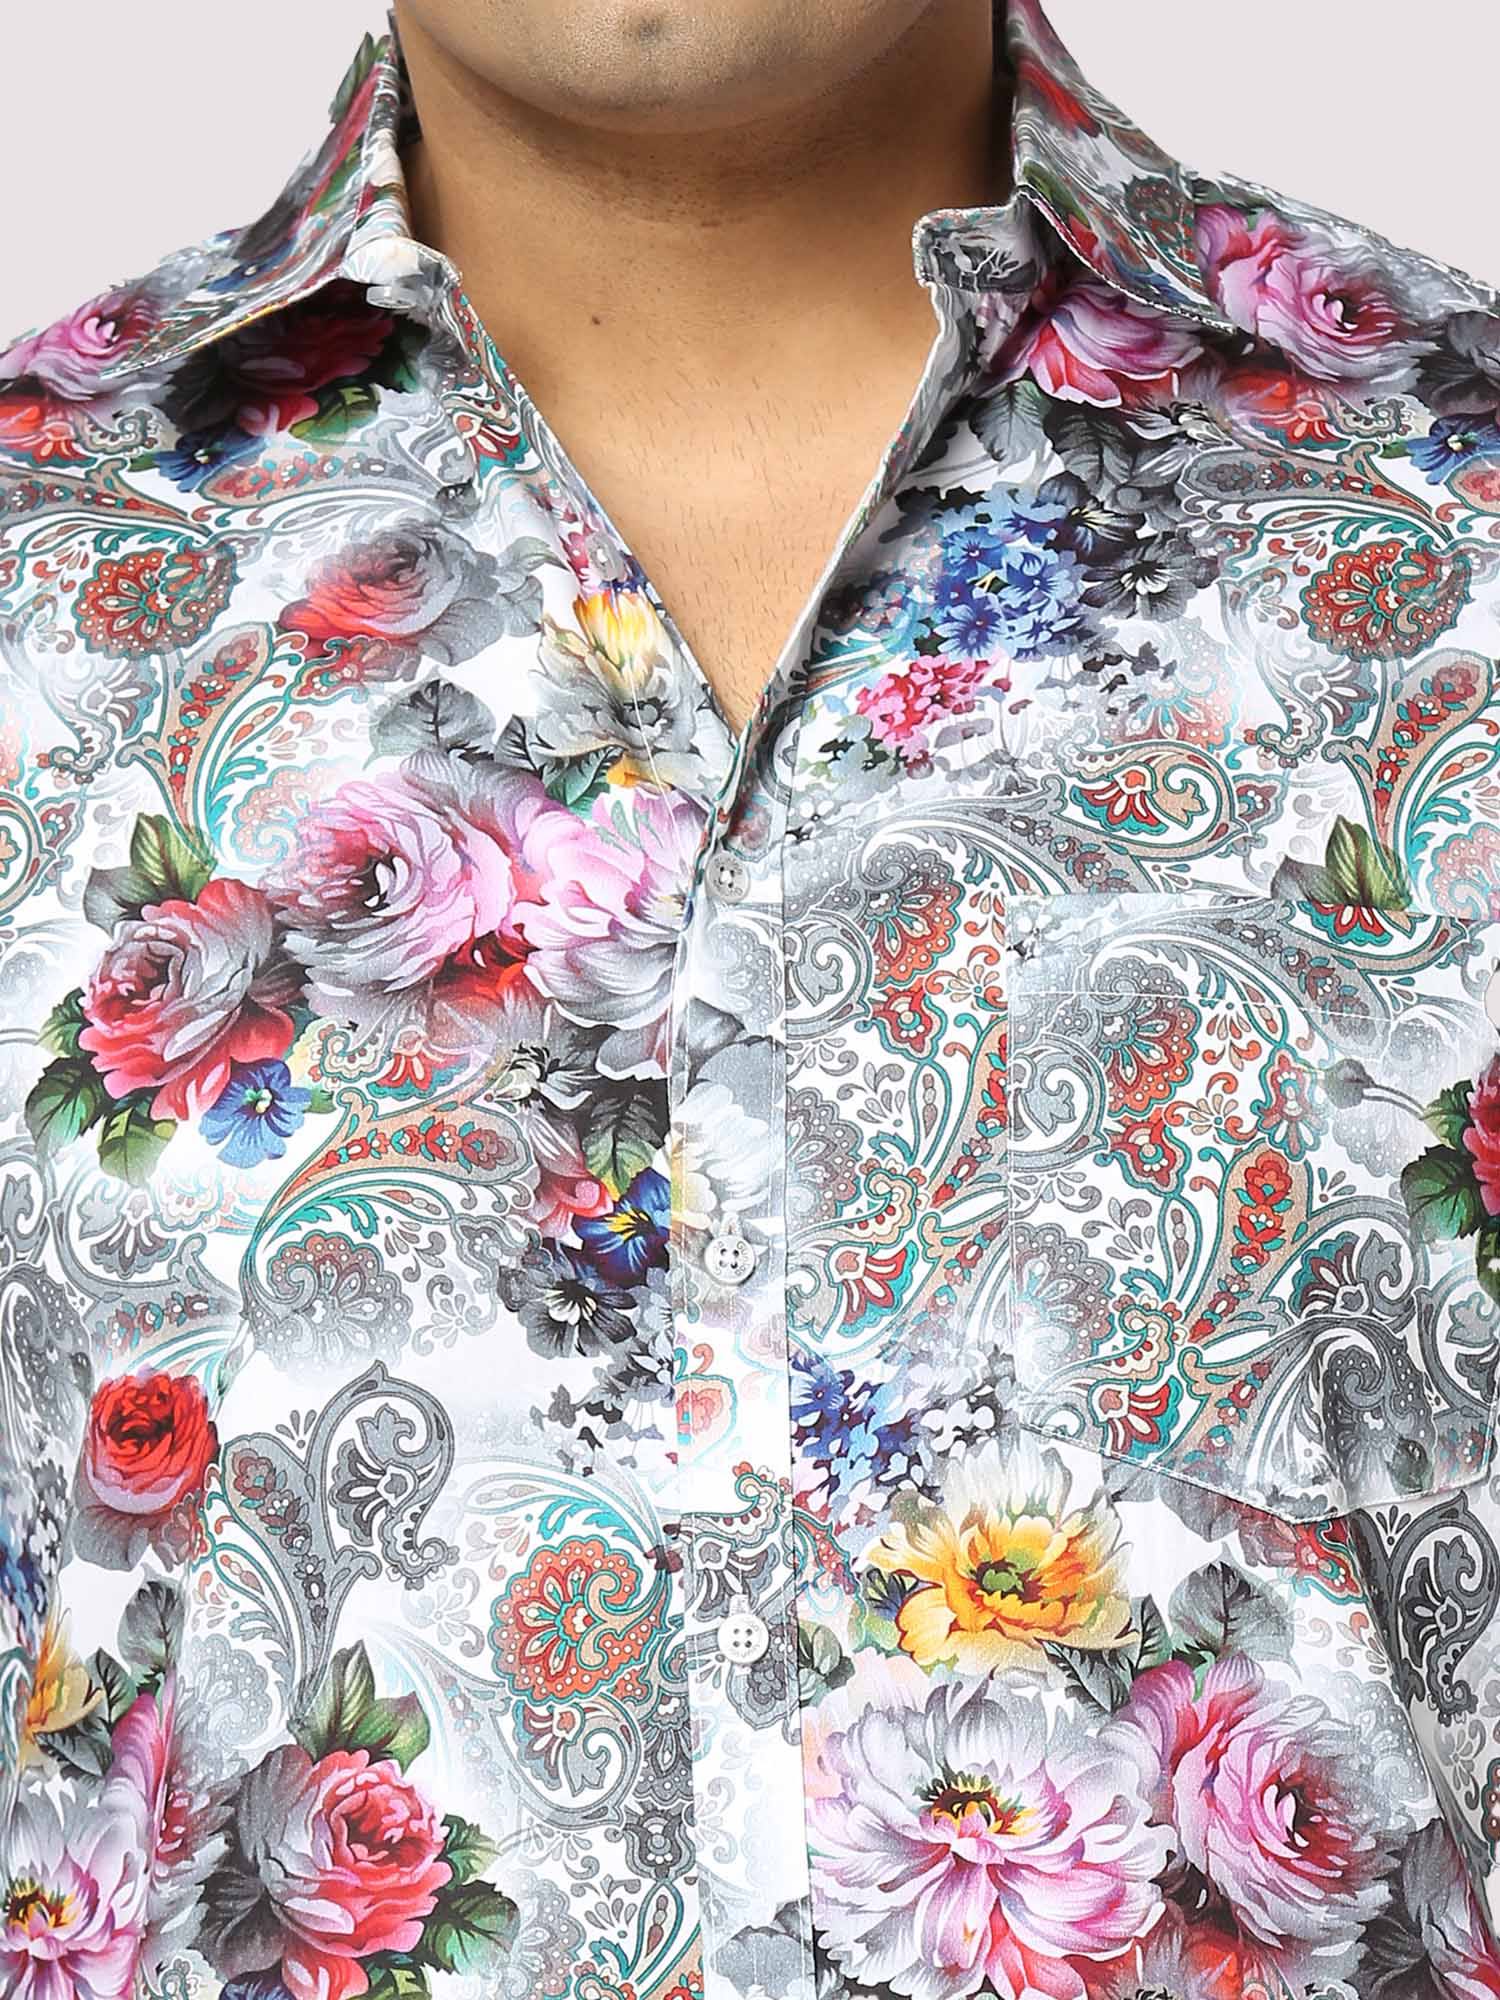 Social Full Sleeves Digital Printed Shirt - Guniaa Fashions